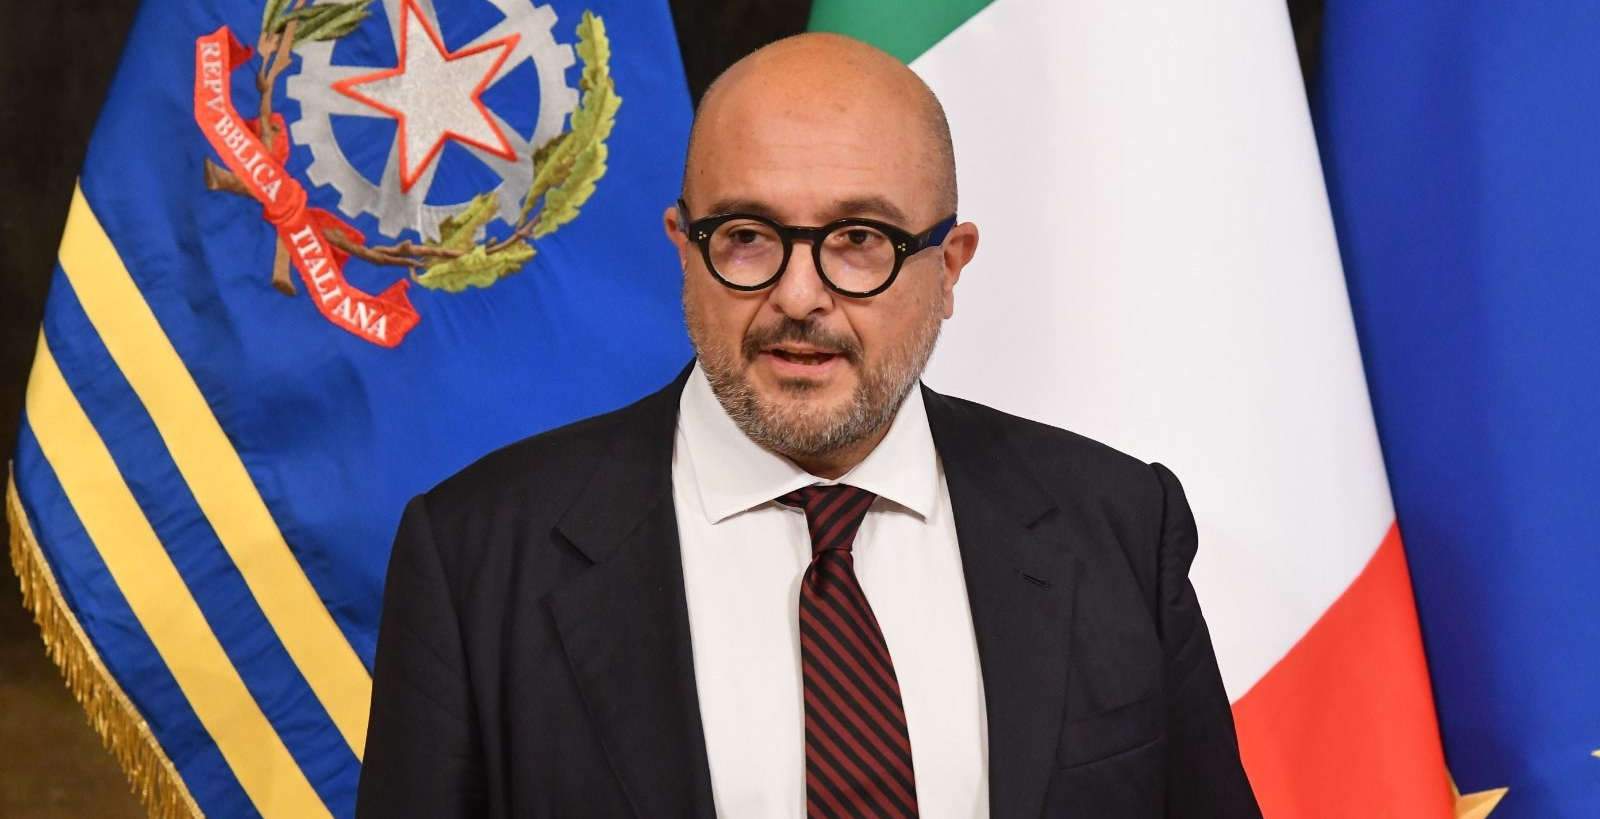 Il ministro Sangiuliano prova ad abolire la cancel culture per decreto